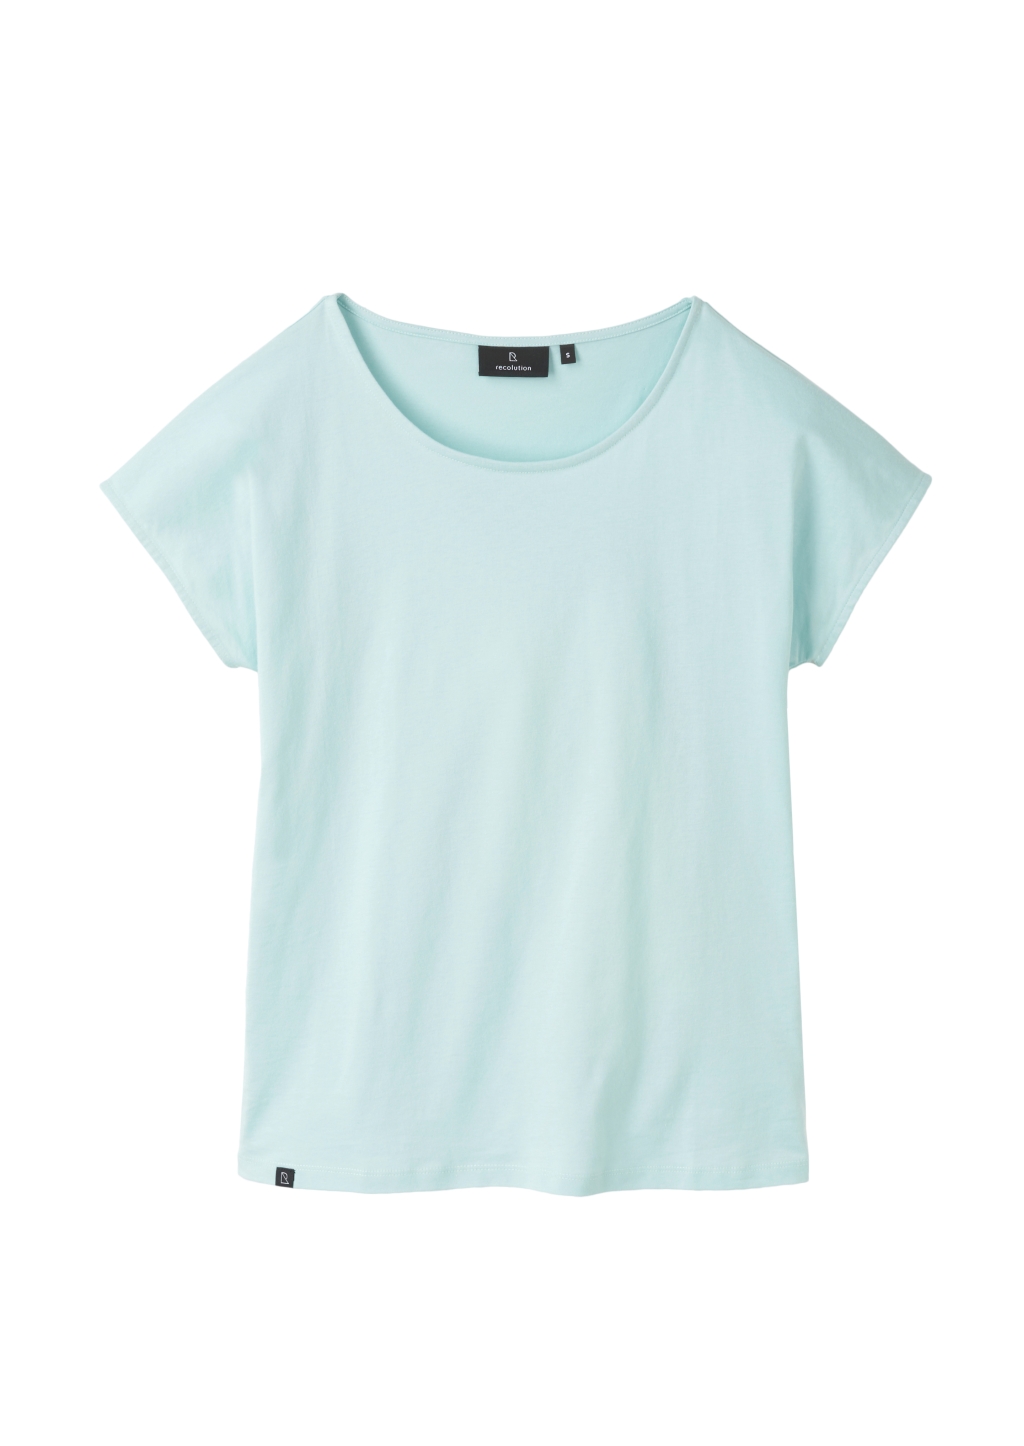 Frauen Casual T-Shirt light green M